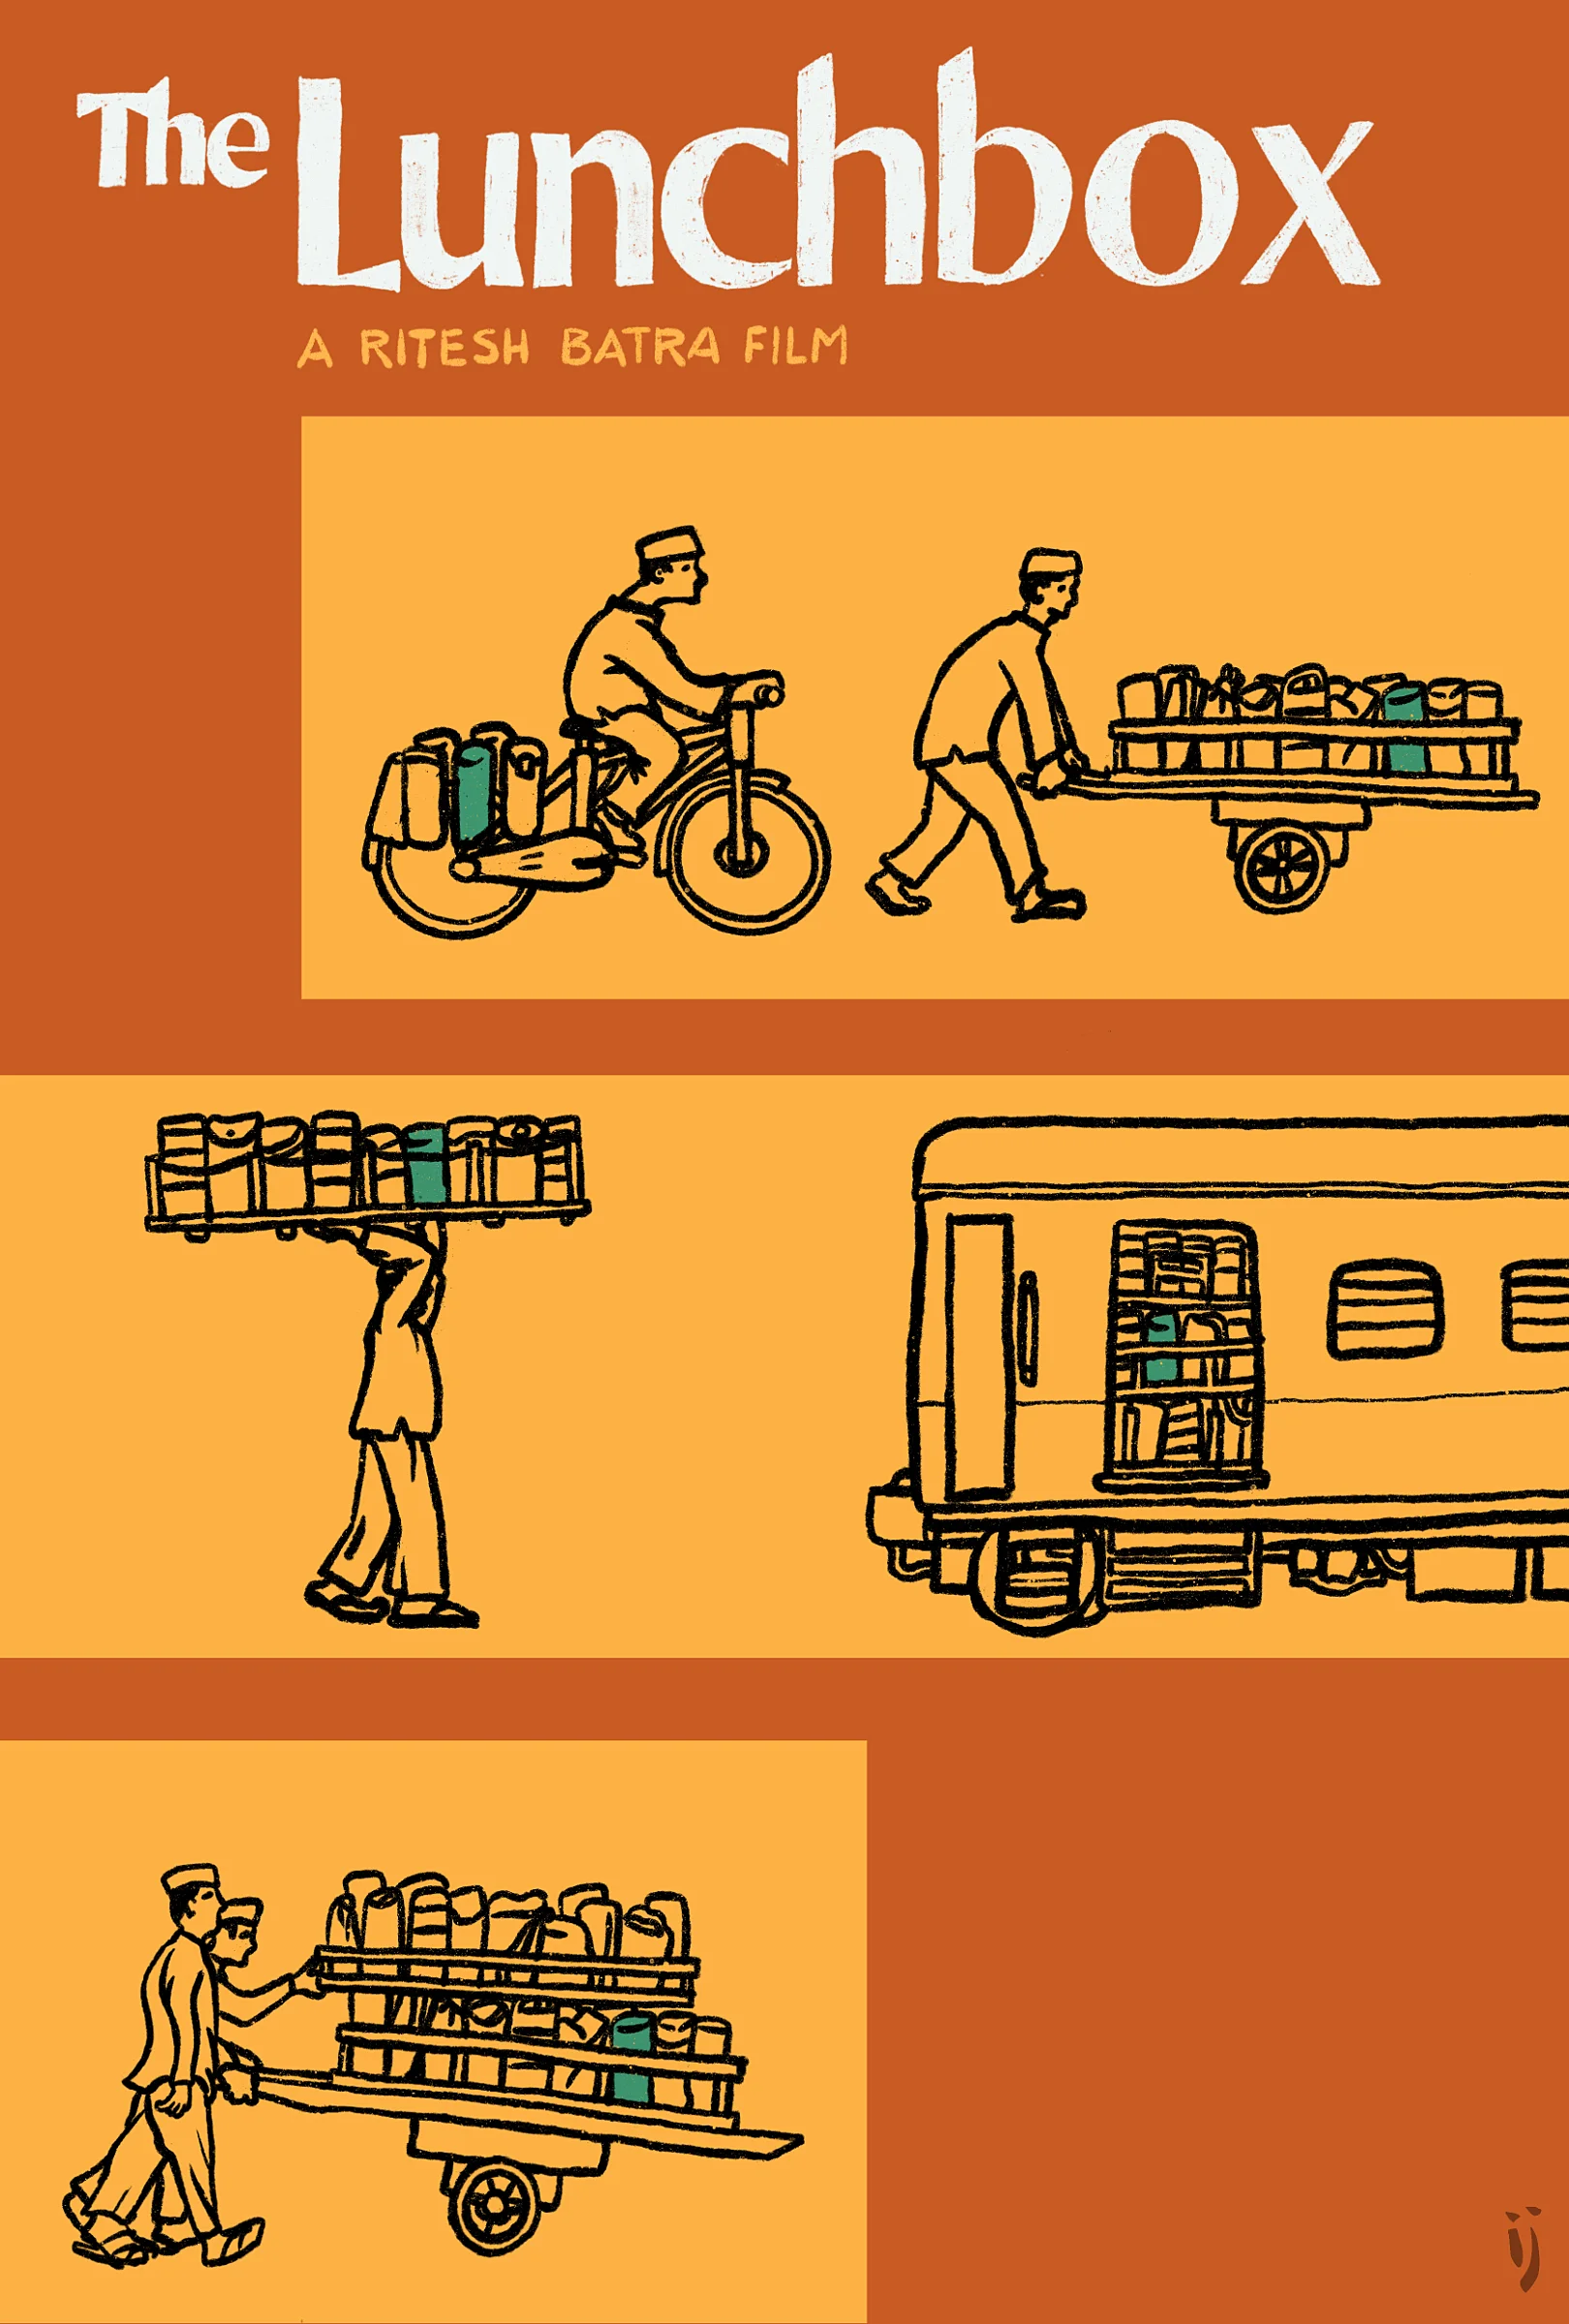 Cartaz alternativo para o filme A Lancheira (The Lunchbox) mostrando a marmita sendo transportada por bicicleta, carrinho, estrado, trem e carrinho novamente. No topo, os dizeres “The Lunchbox” e “A Ritesh Batra Film”